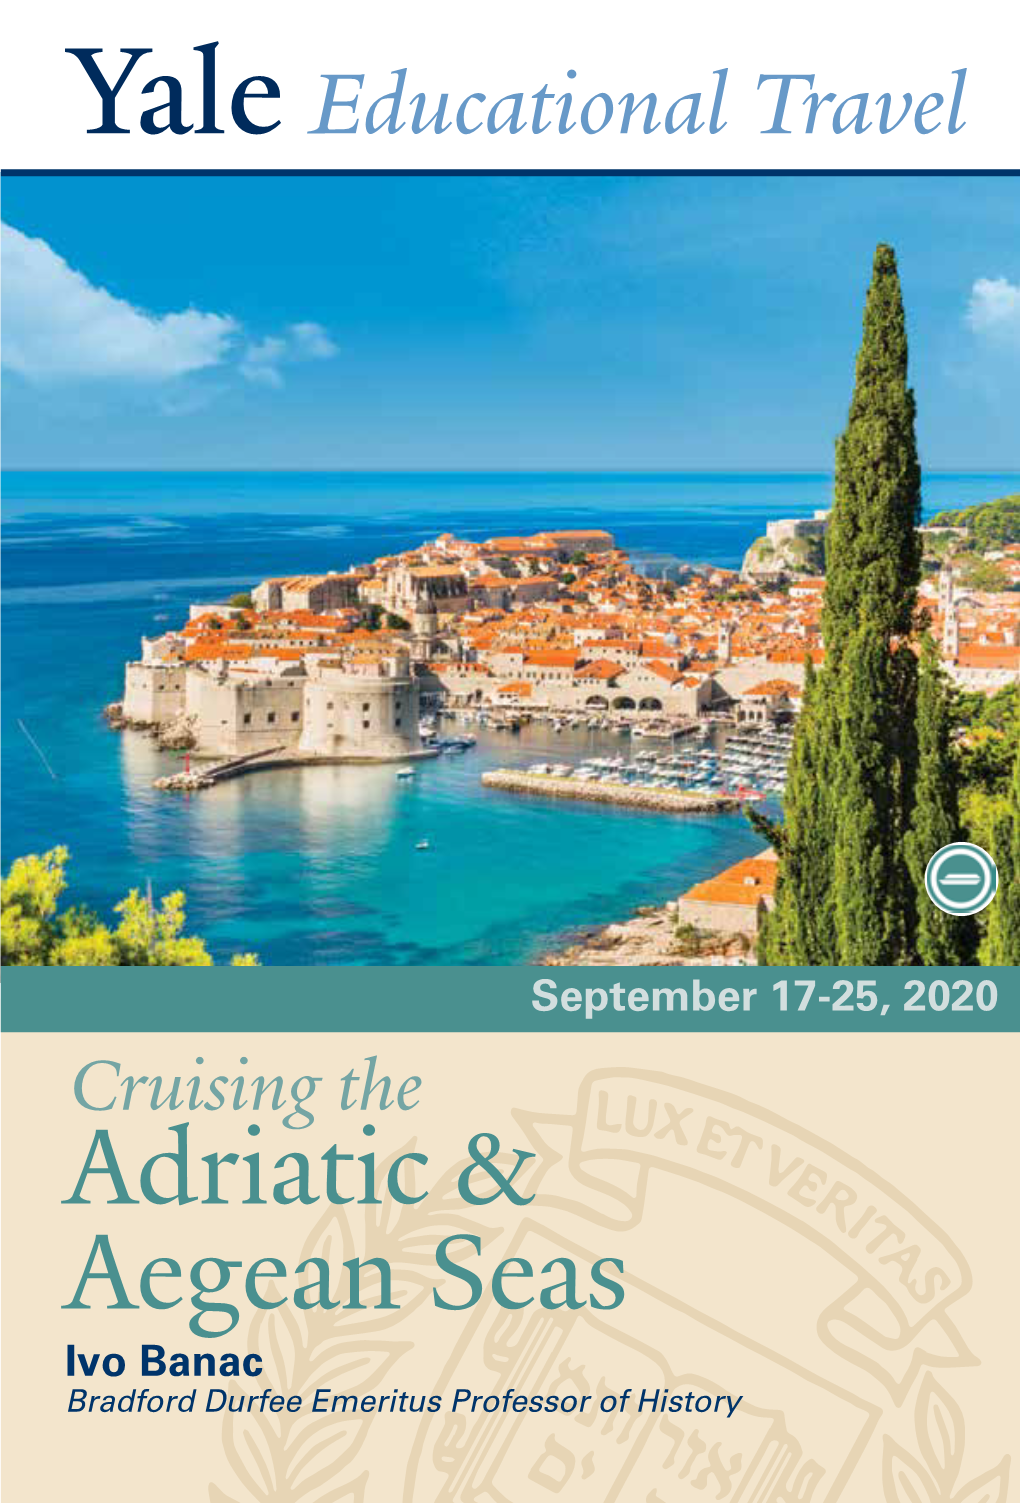 Adriatic & Aegean Seas